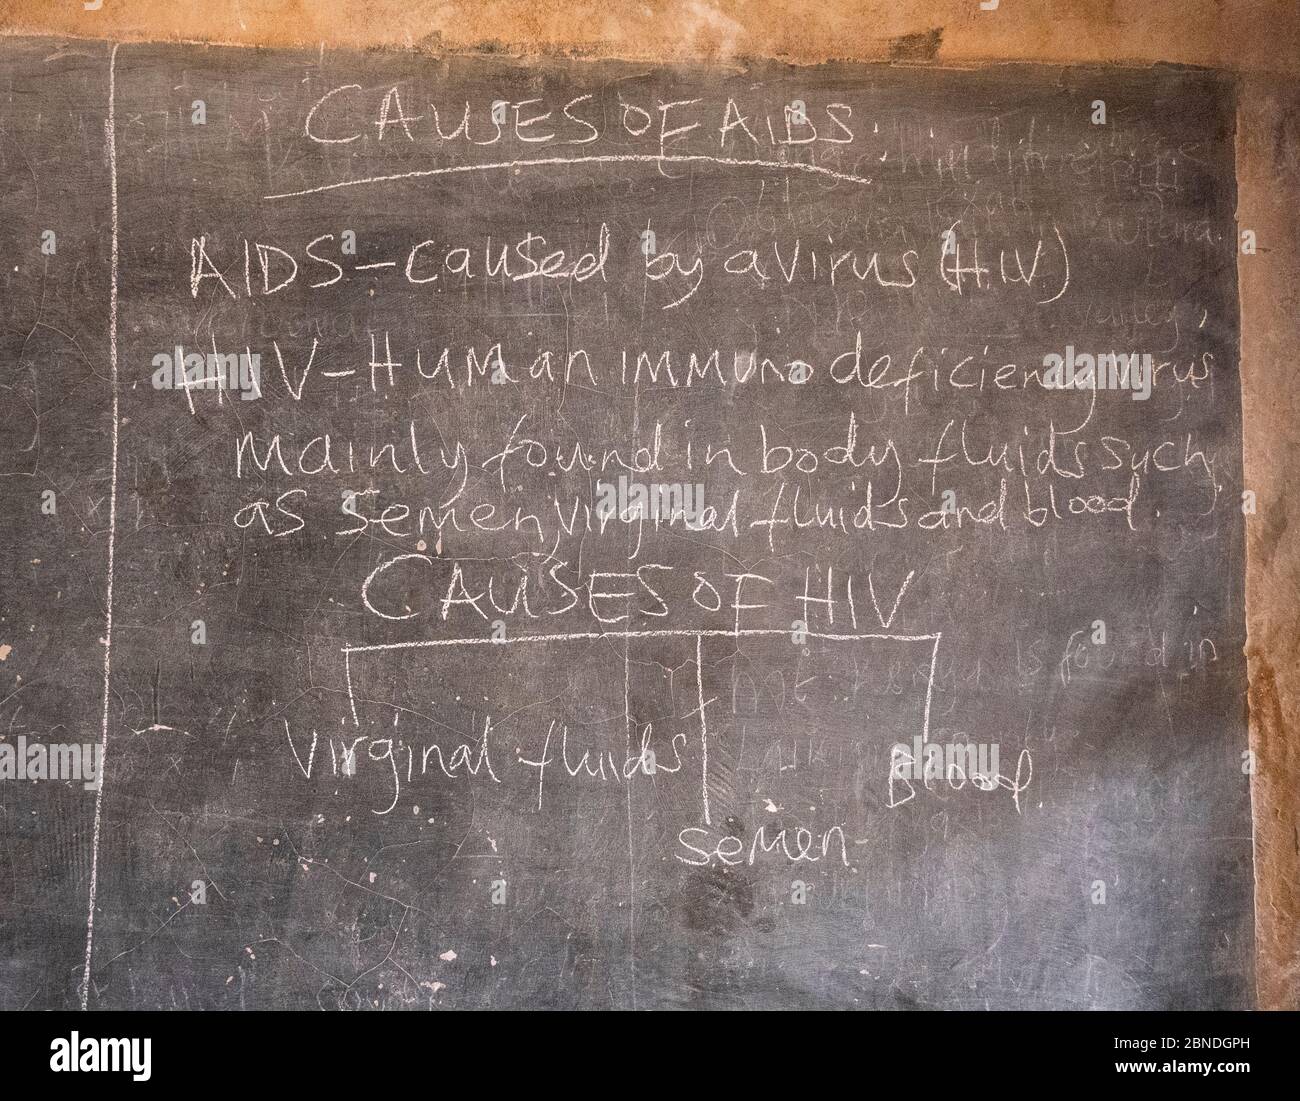 Kreidetafel in einer Schule in Kenia mit einer Unterrichtsstunde, um Schüler über HIV und AIDS zu unterrichten Stockfoto